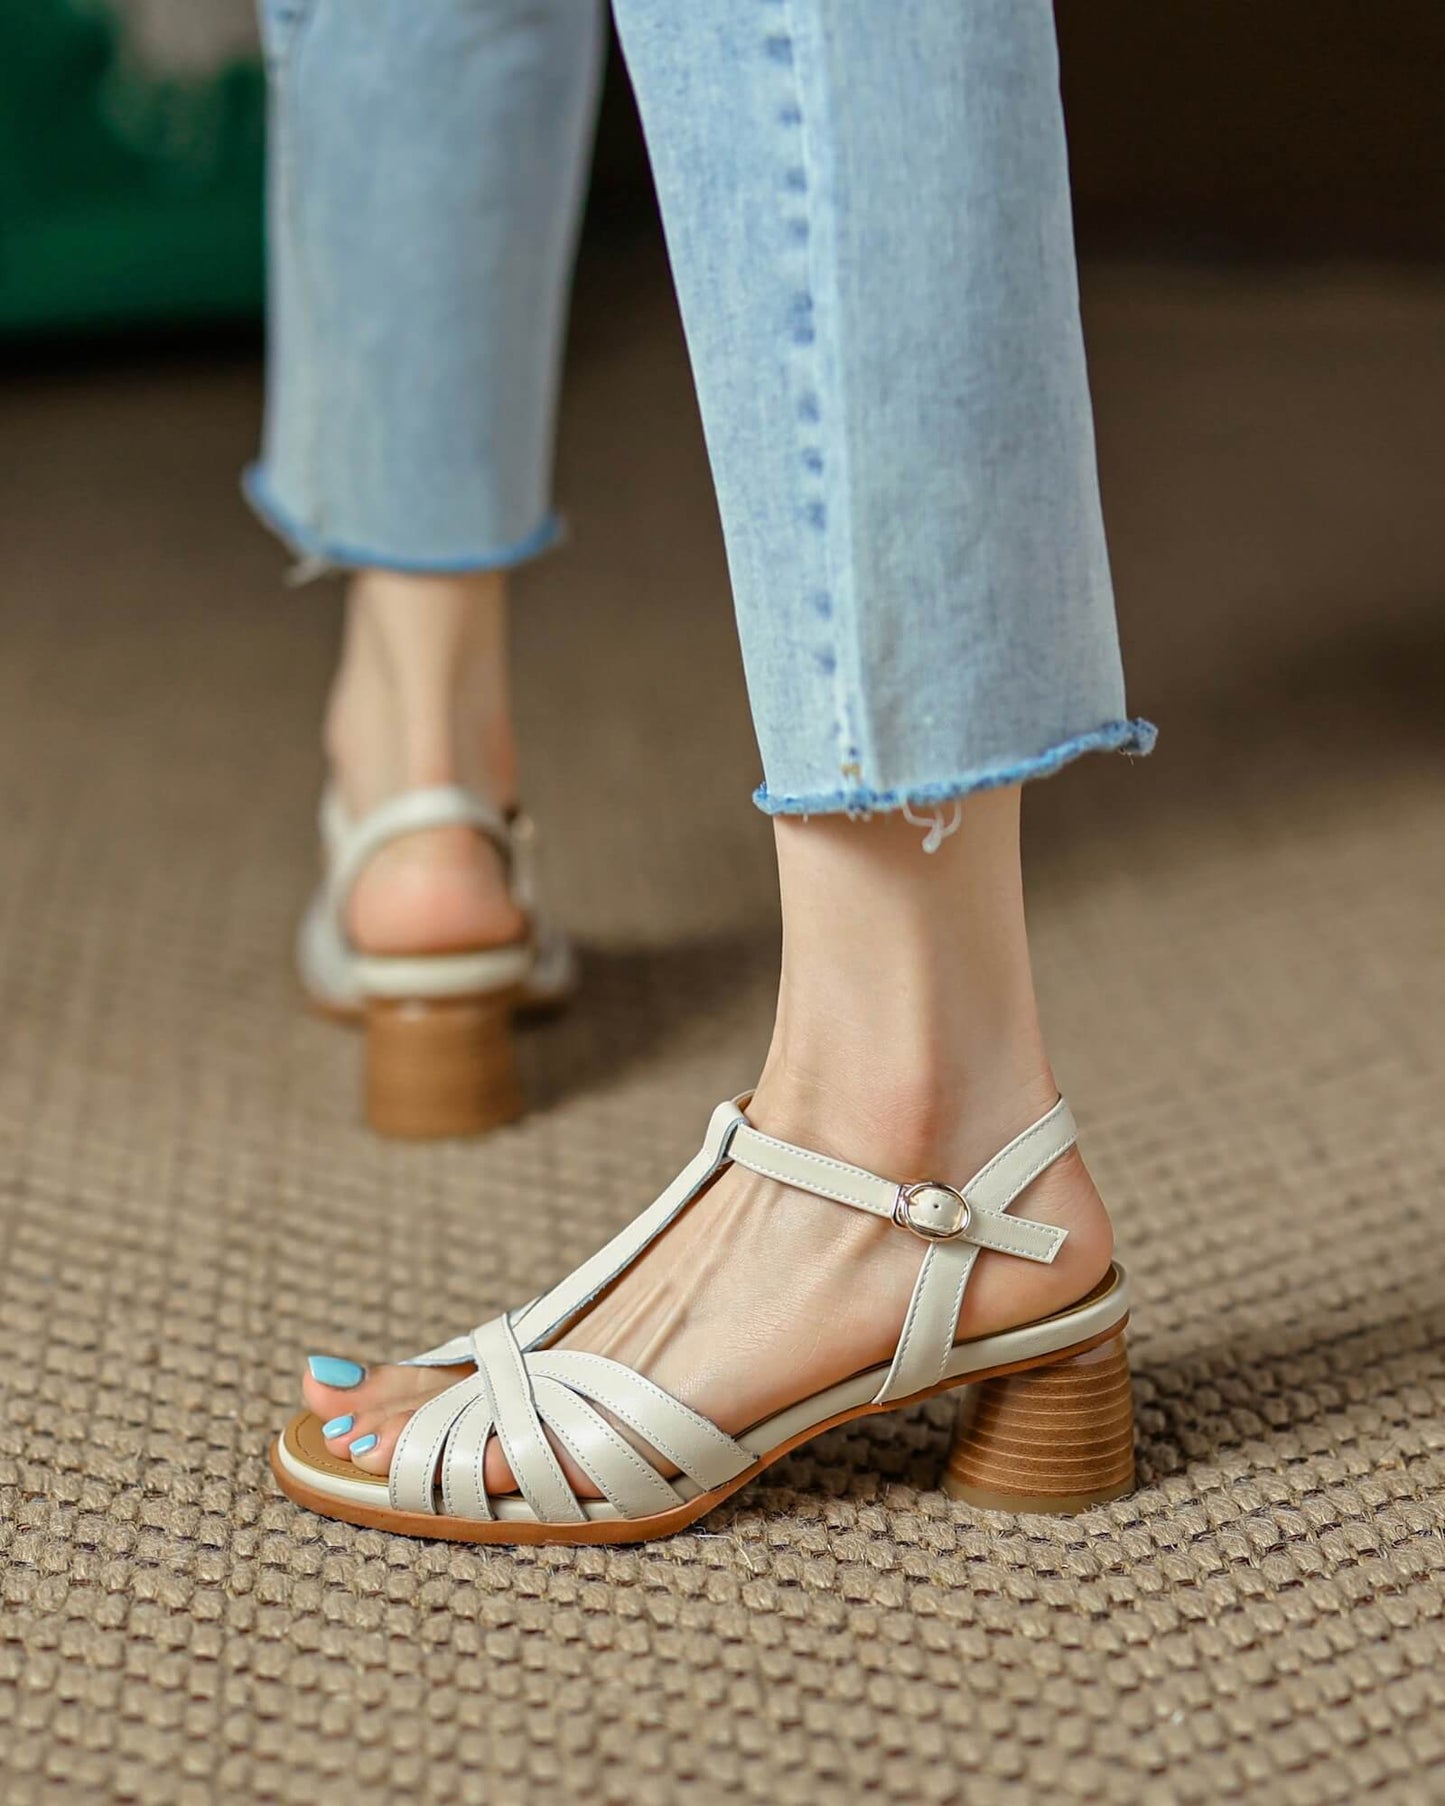 Alton - Leather Sandals